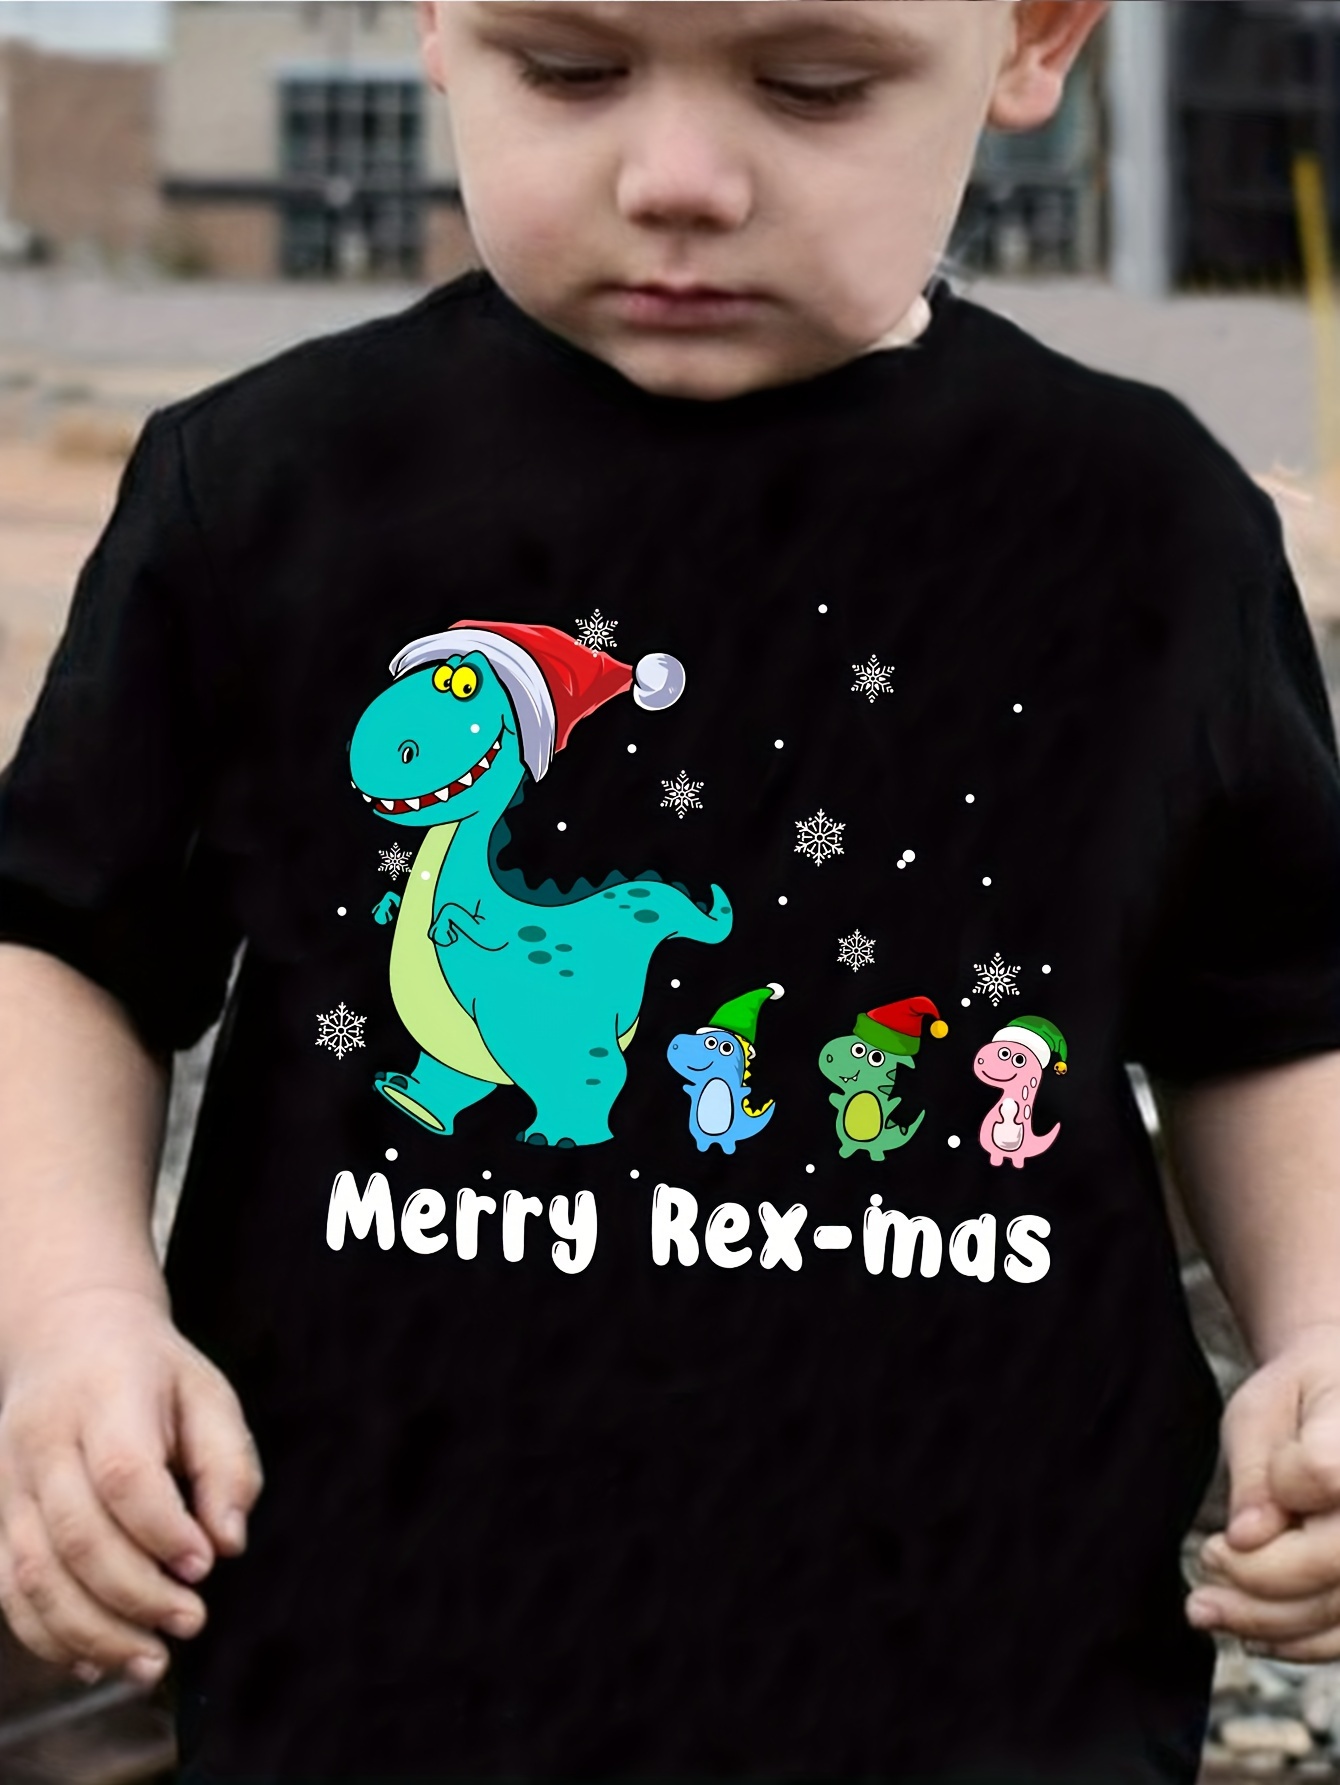 Christmas Dinosaur With Santa Clothing Print Boys Creative T